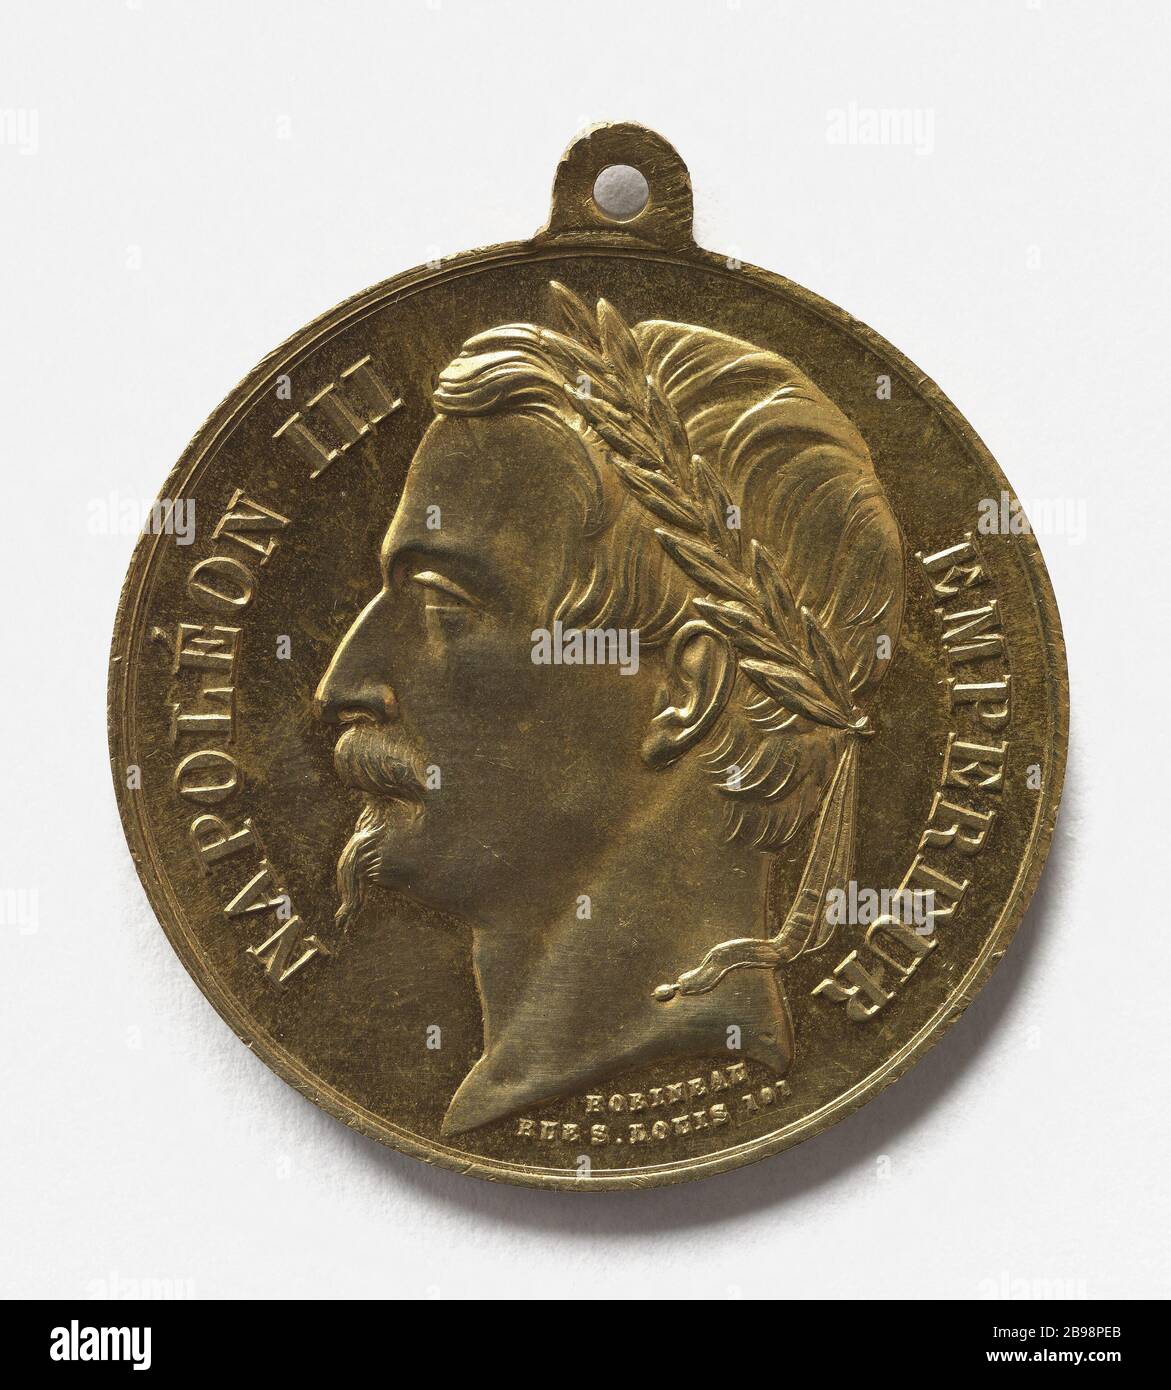 Napoleon III. (1808-1873) proklamierte den Kaiser, 2. Dezember (Dummy-Titel) Robineau. Médaille de Napoléon III (1808-1873) proclamé empereur, 2 décembre 1852. Paris, musée Carnavalet. Stockfoto